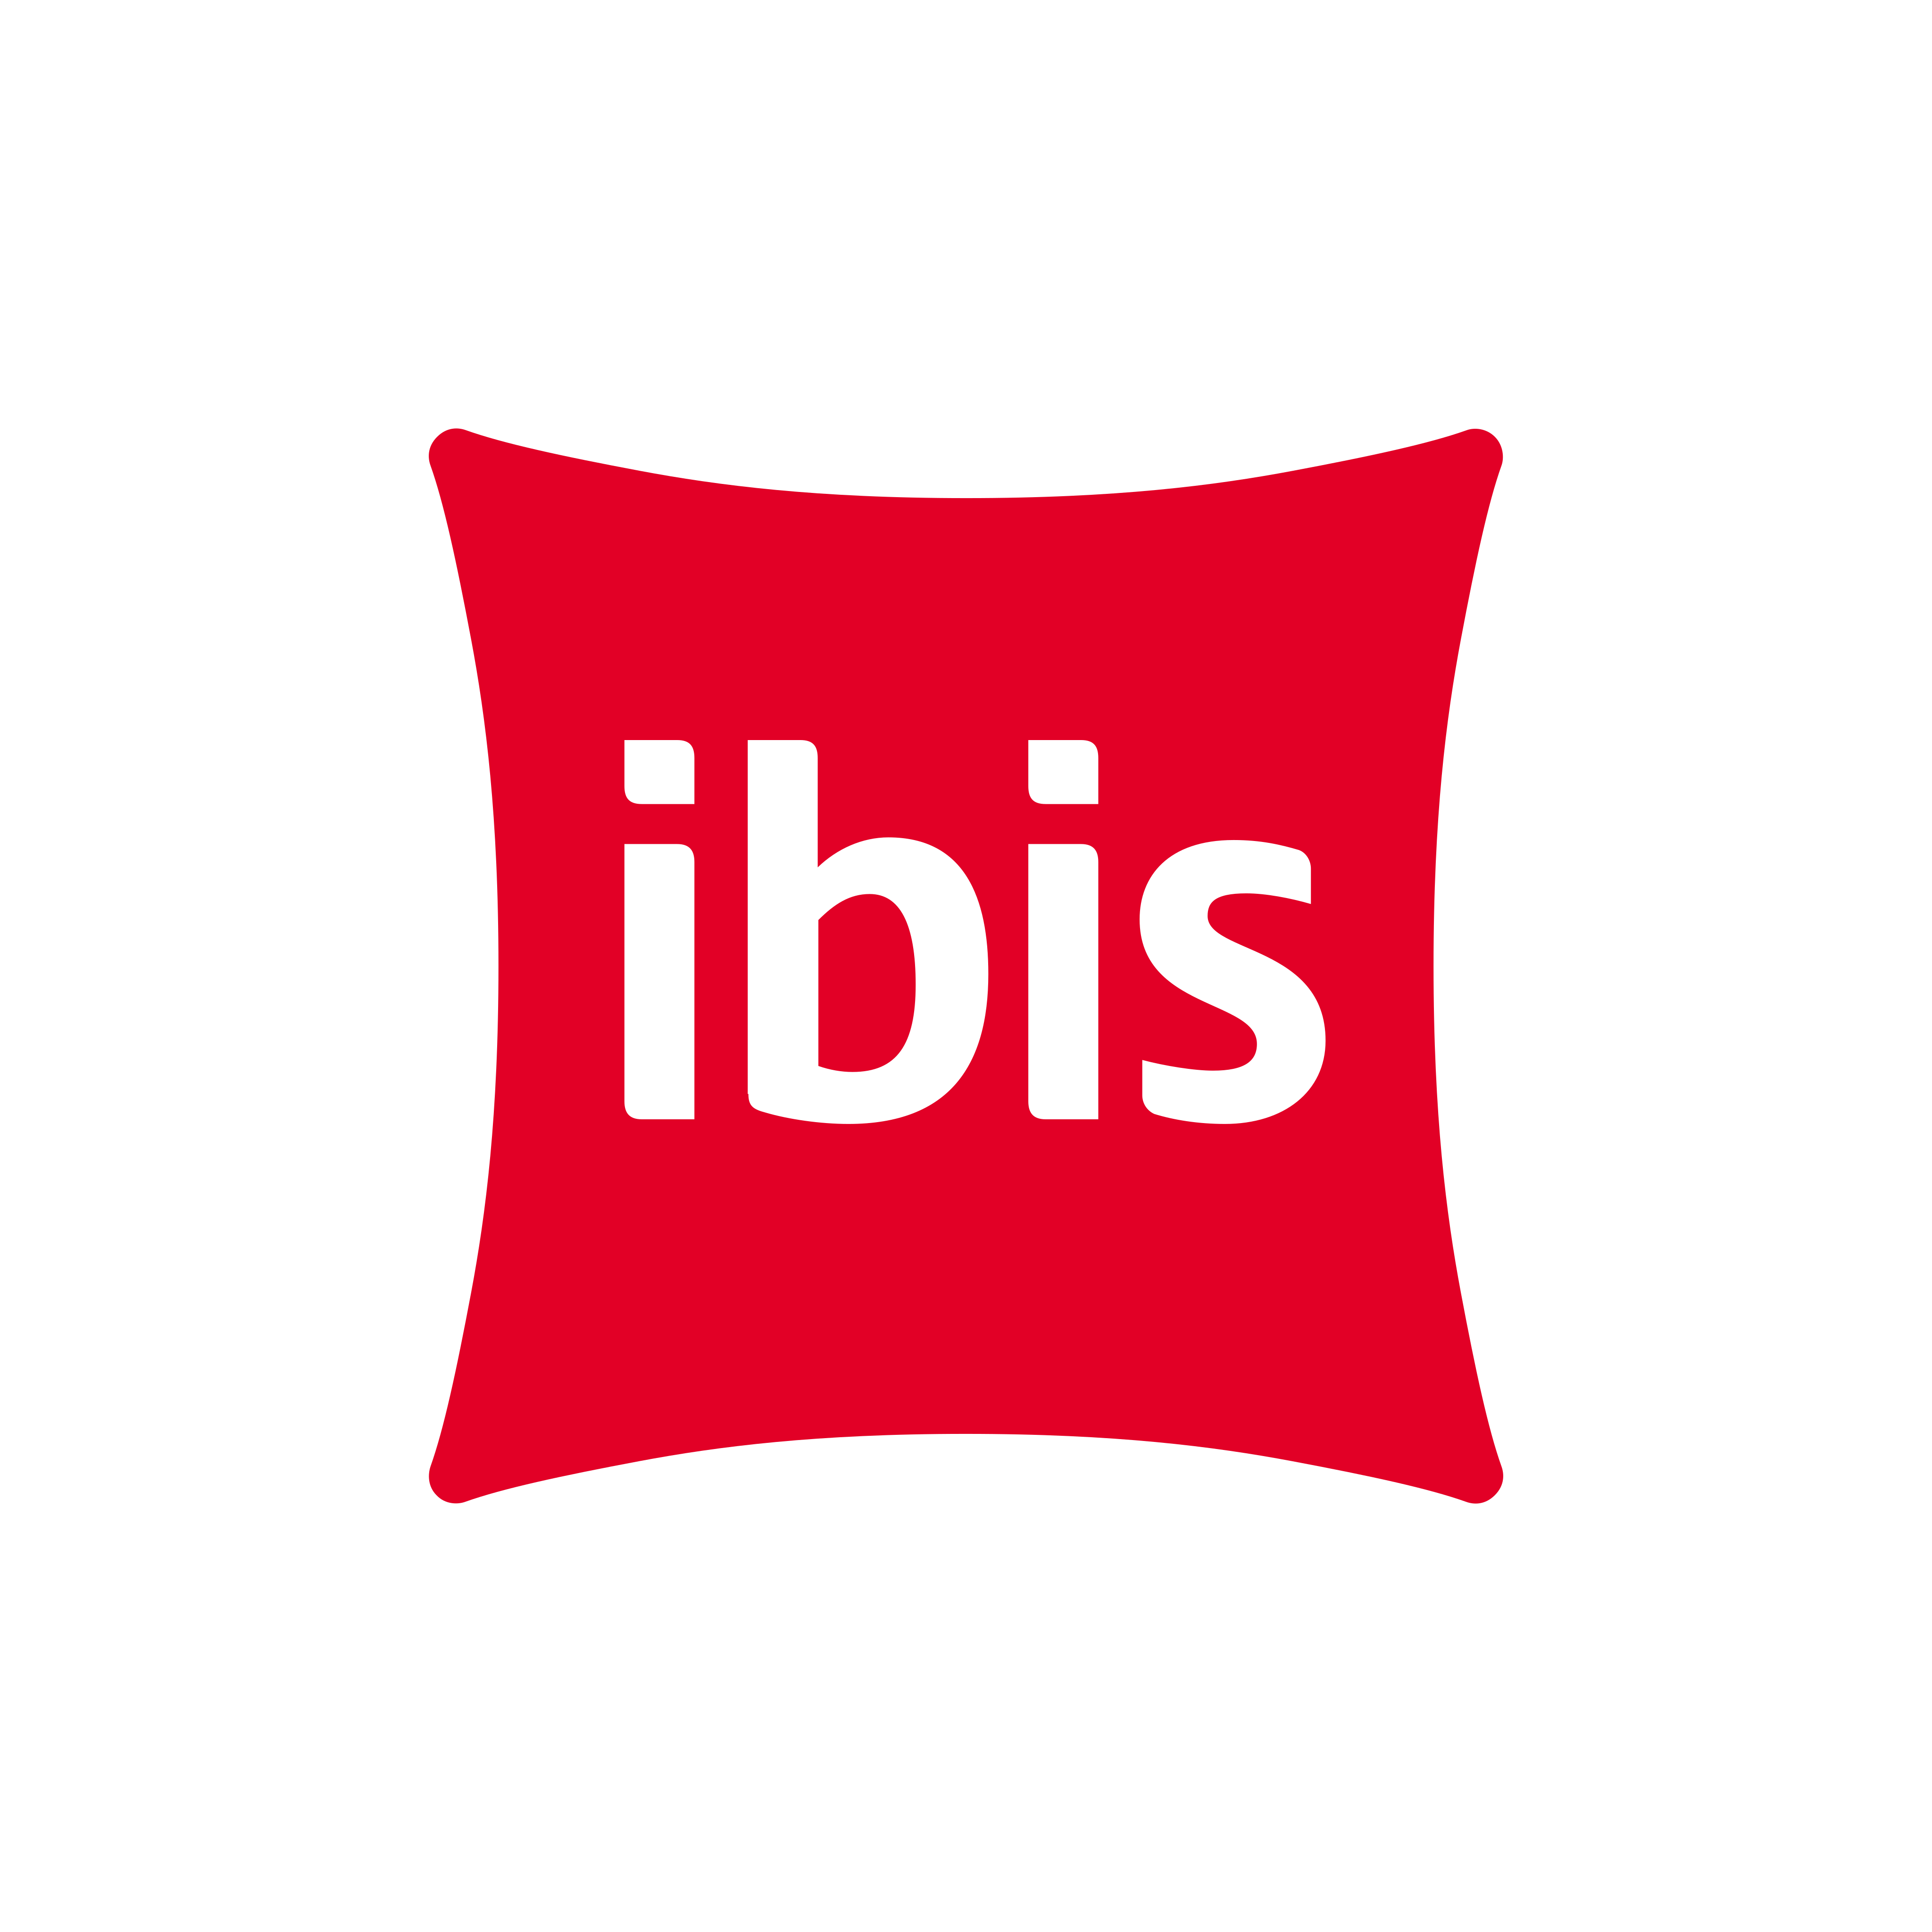 ibis logo 0 - Hotel Ibis Logo